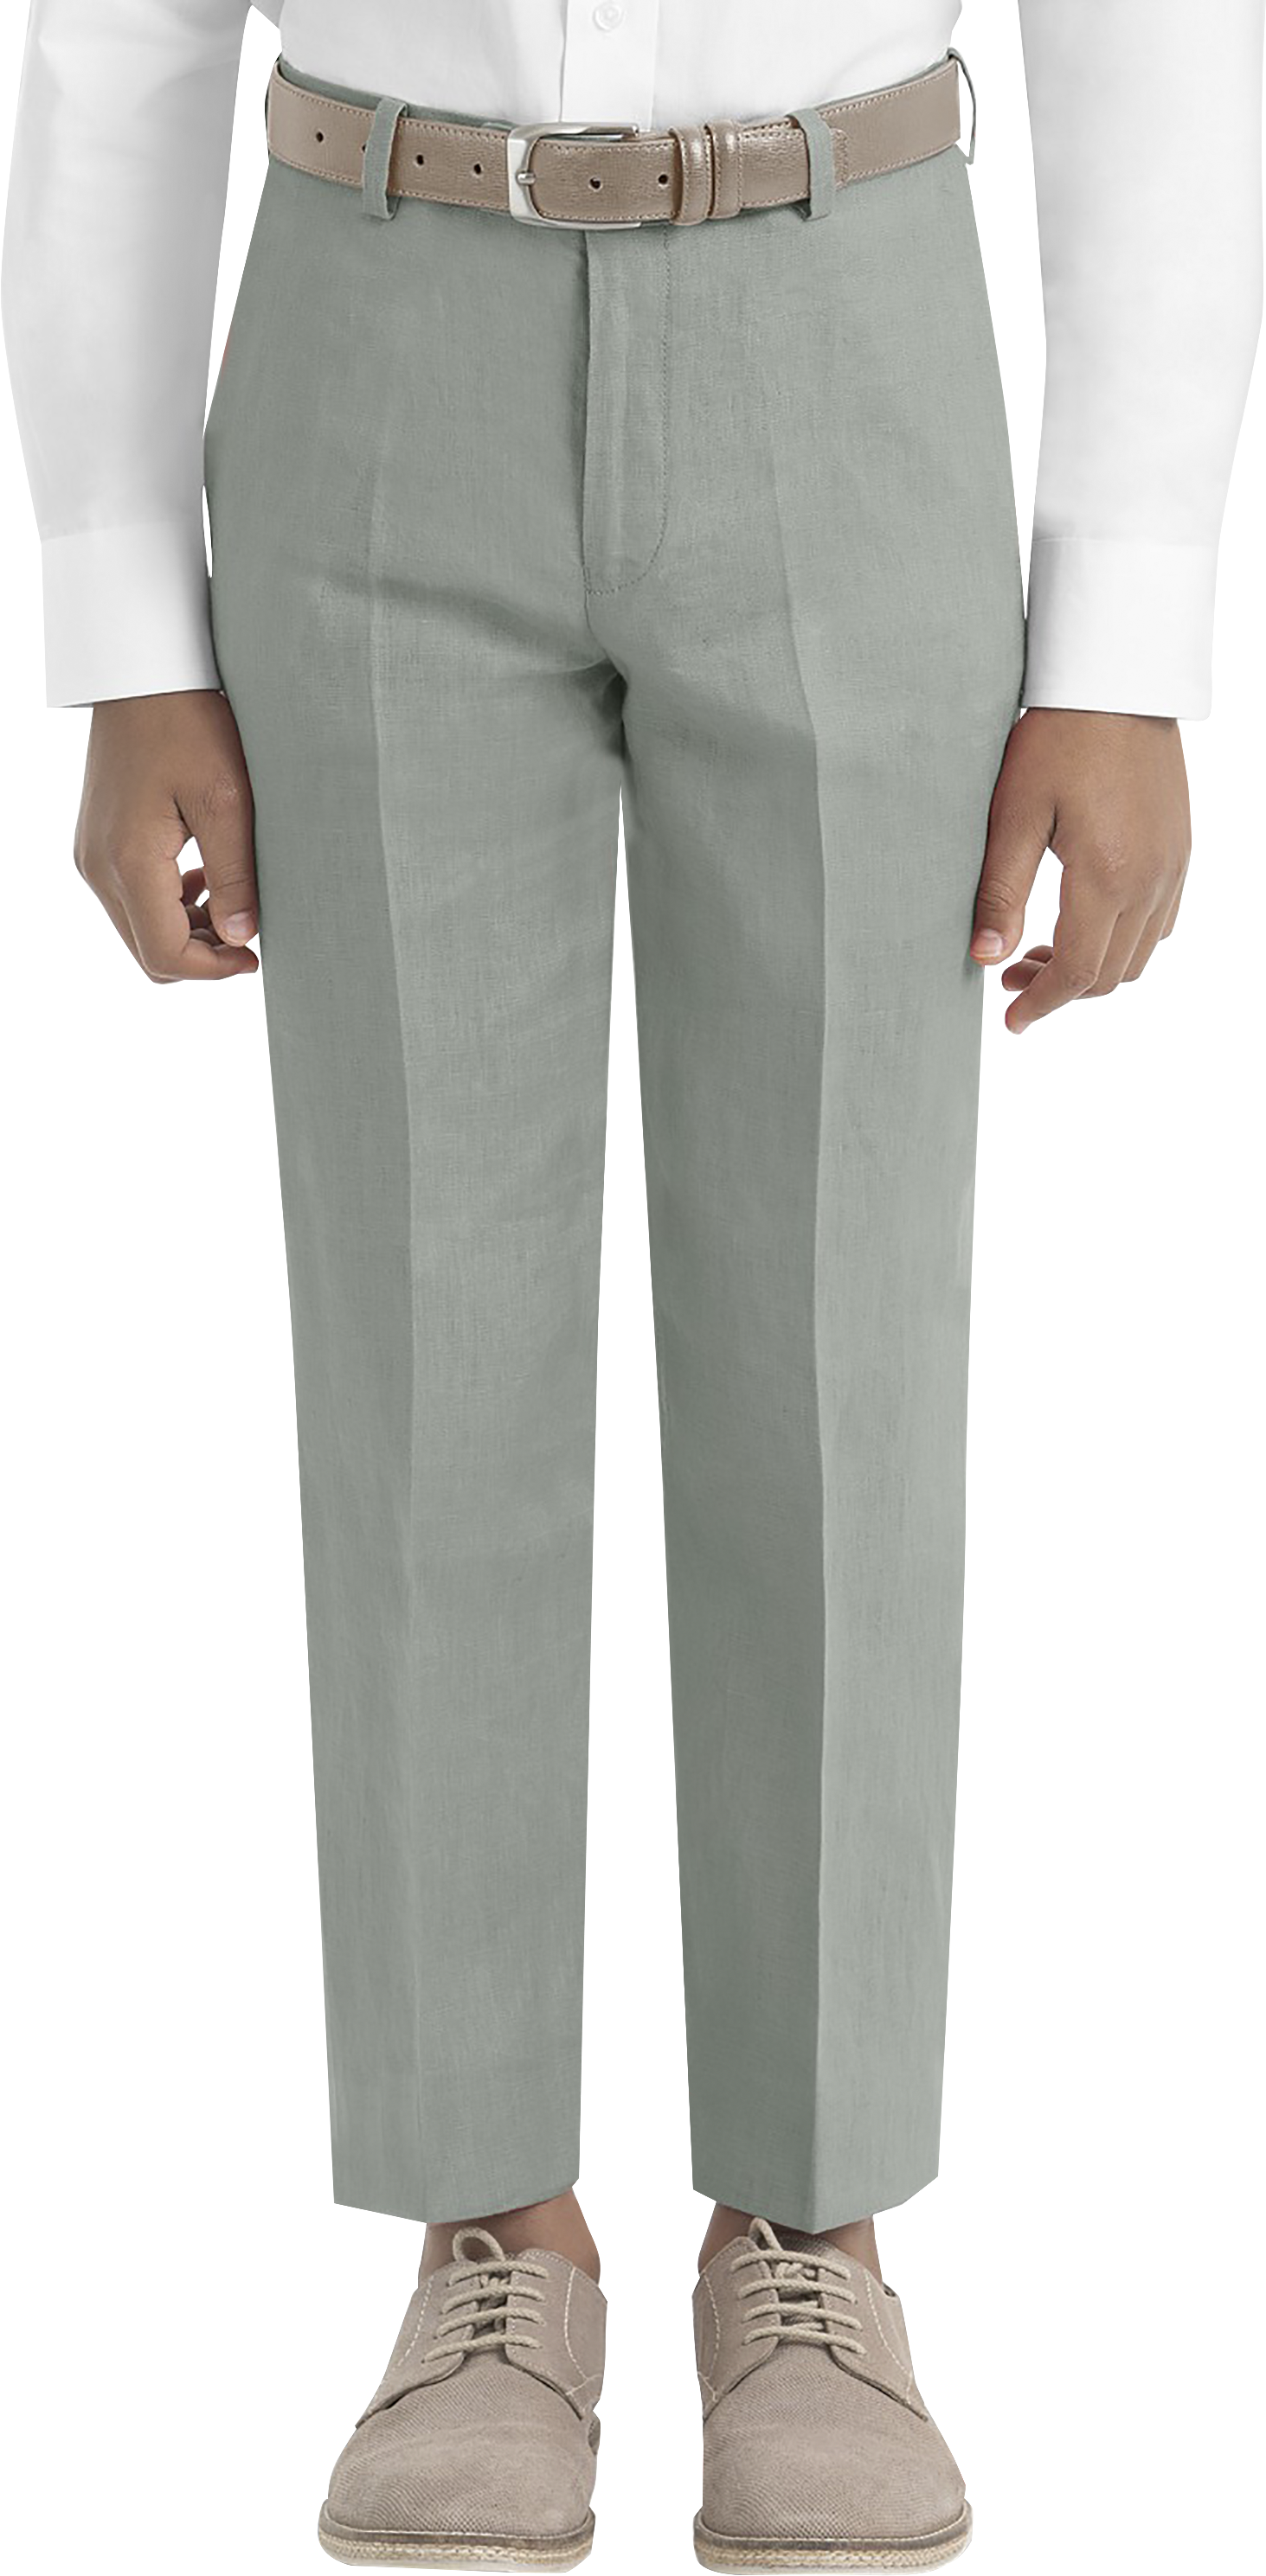 Lauren By Ralph Lauren Boys (Sizes 8-20) Suit Separates Pants, Sage